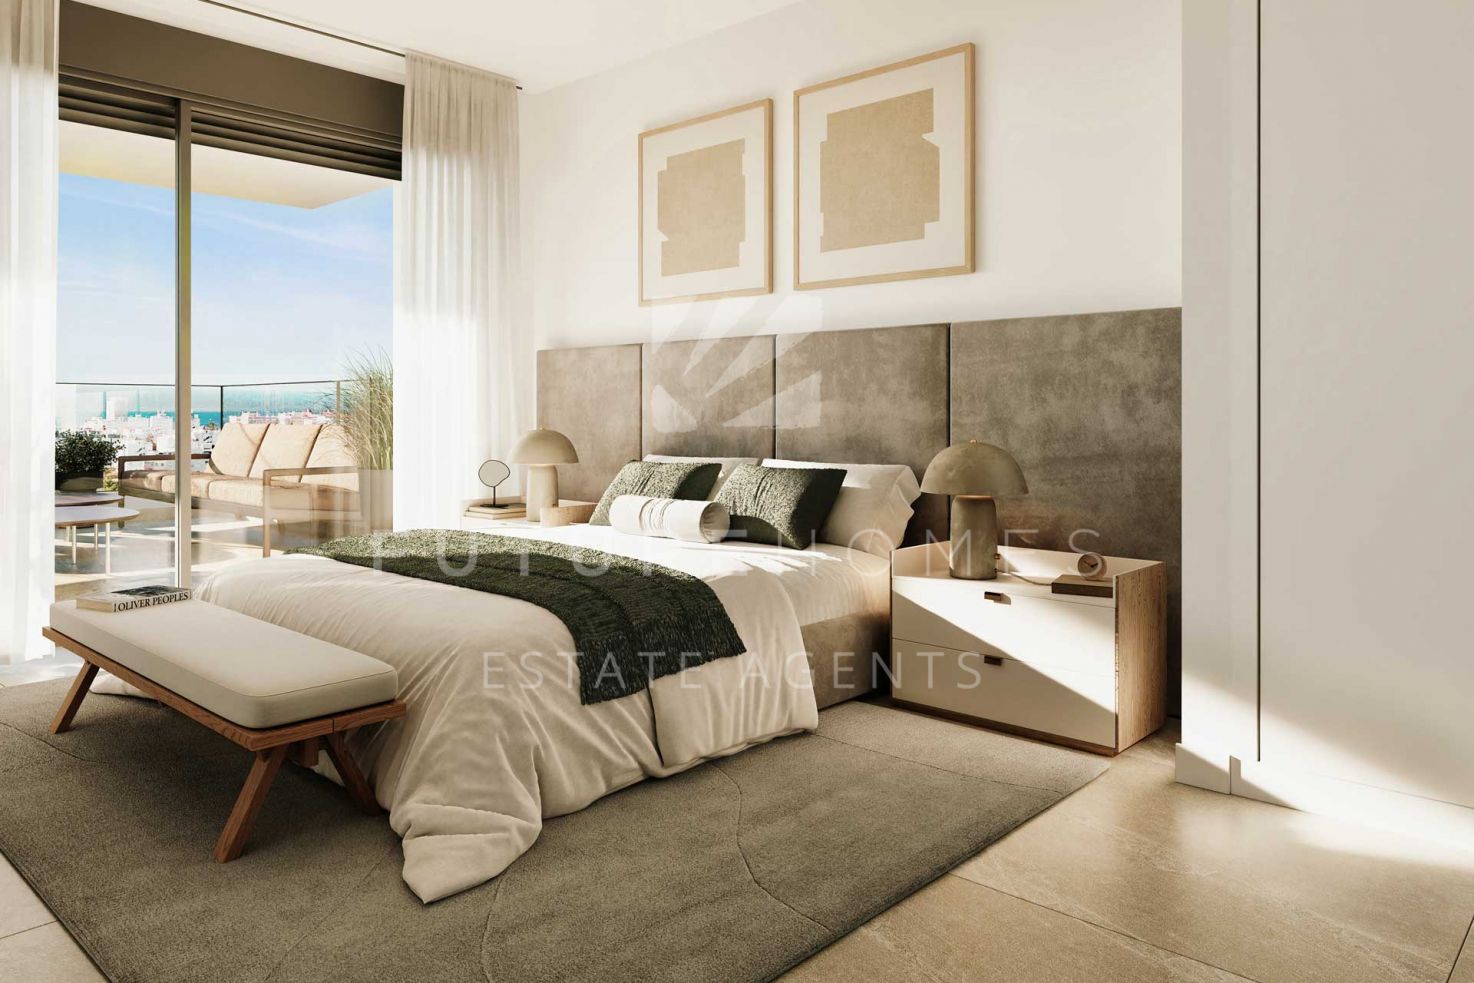 Nuevo lanzamiento: ¡apartamentos de estilo contemporáneo sobre plano en Las Mesas Estepona! - a poca distancia de las playas, el centro de la ciudad y el puerto.